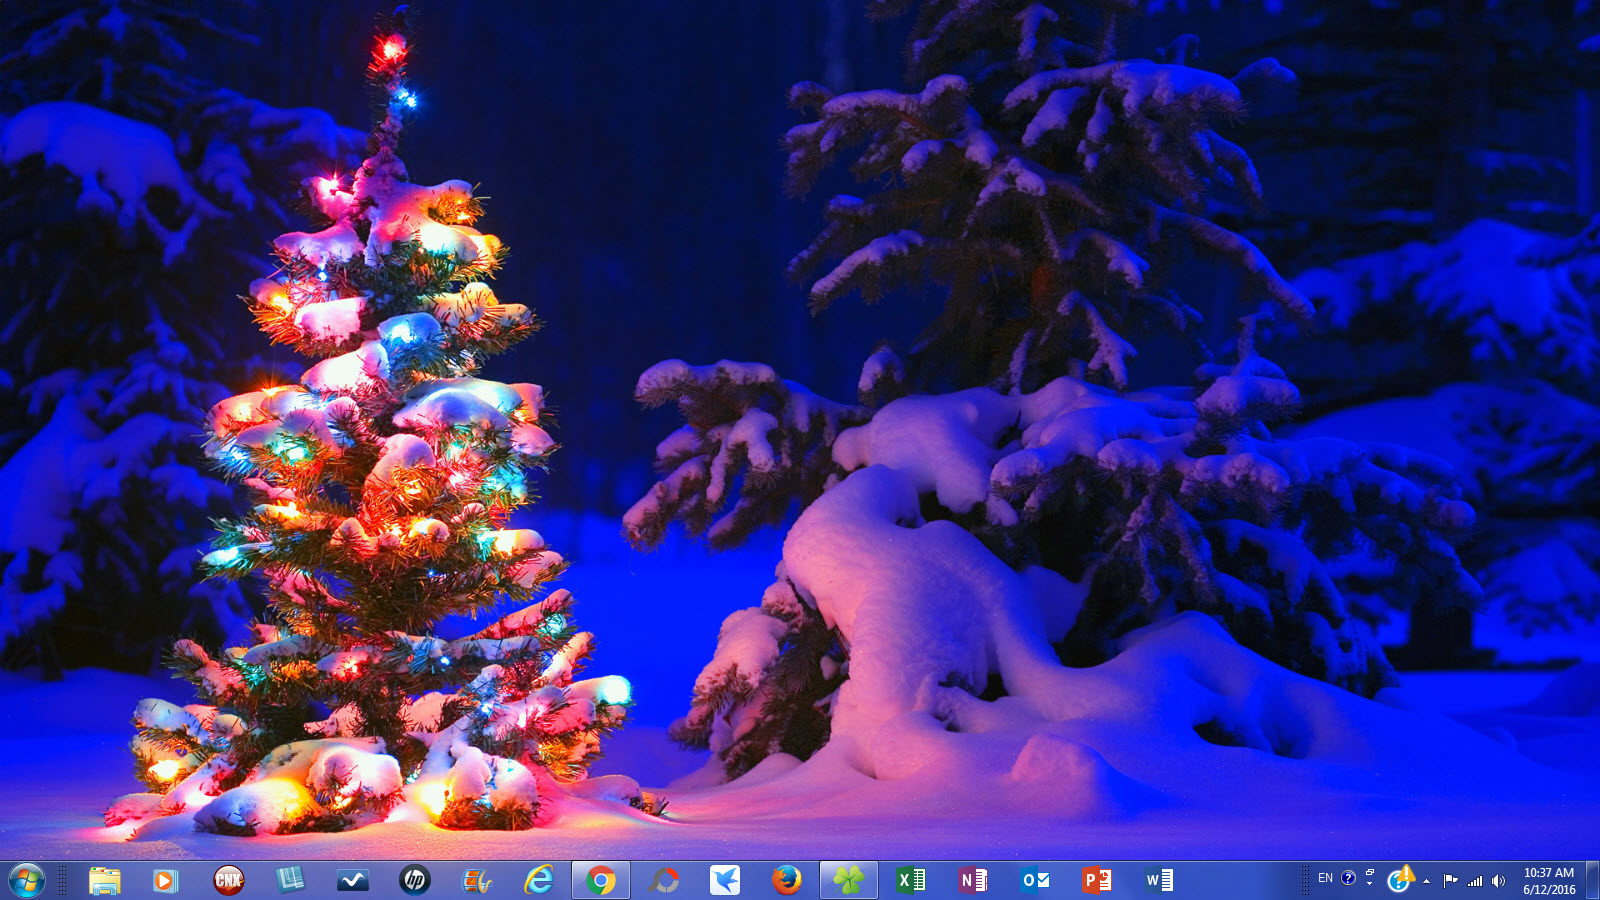 Windows 7 Christmas Theme Snowy Night